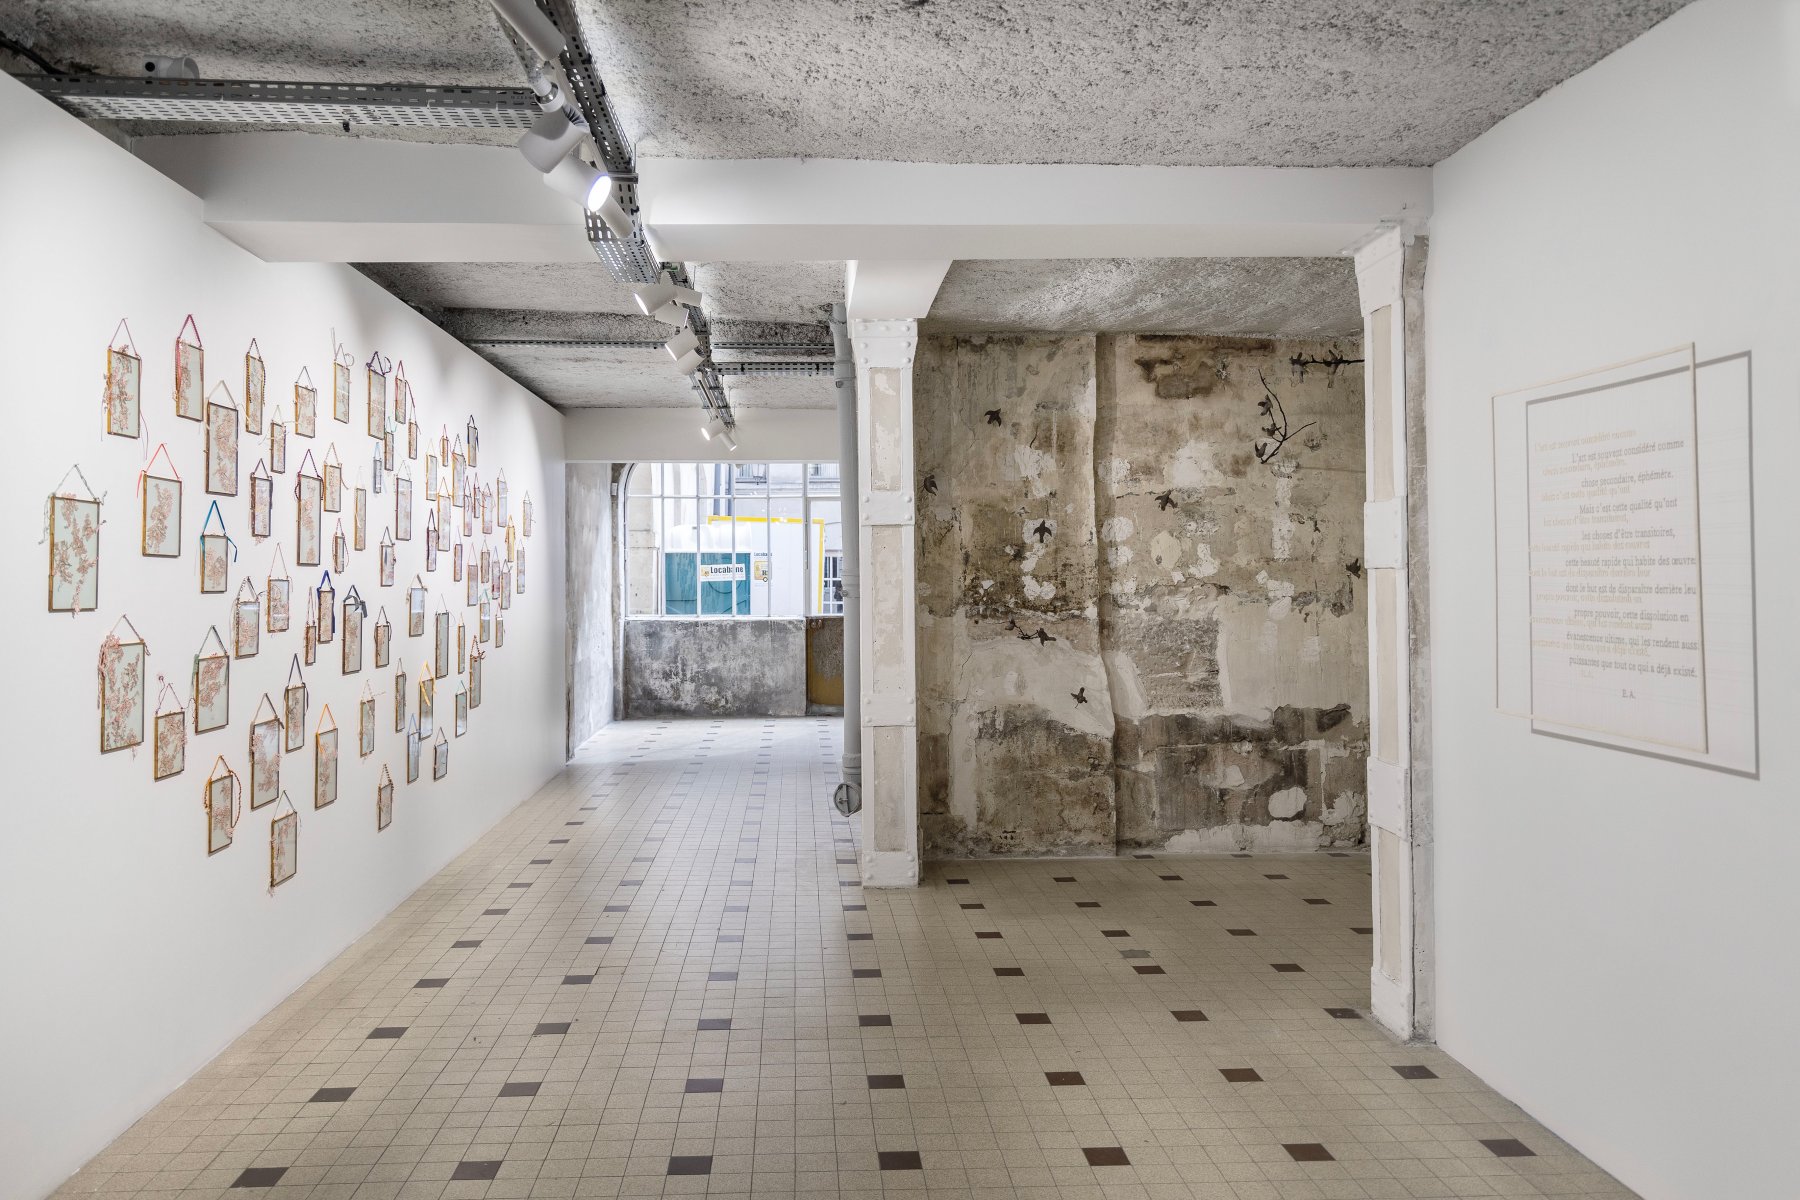 Installation image for Sabrina Mezzaqui: Di punto in bianco, at Galleria Continua